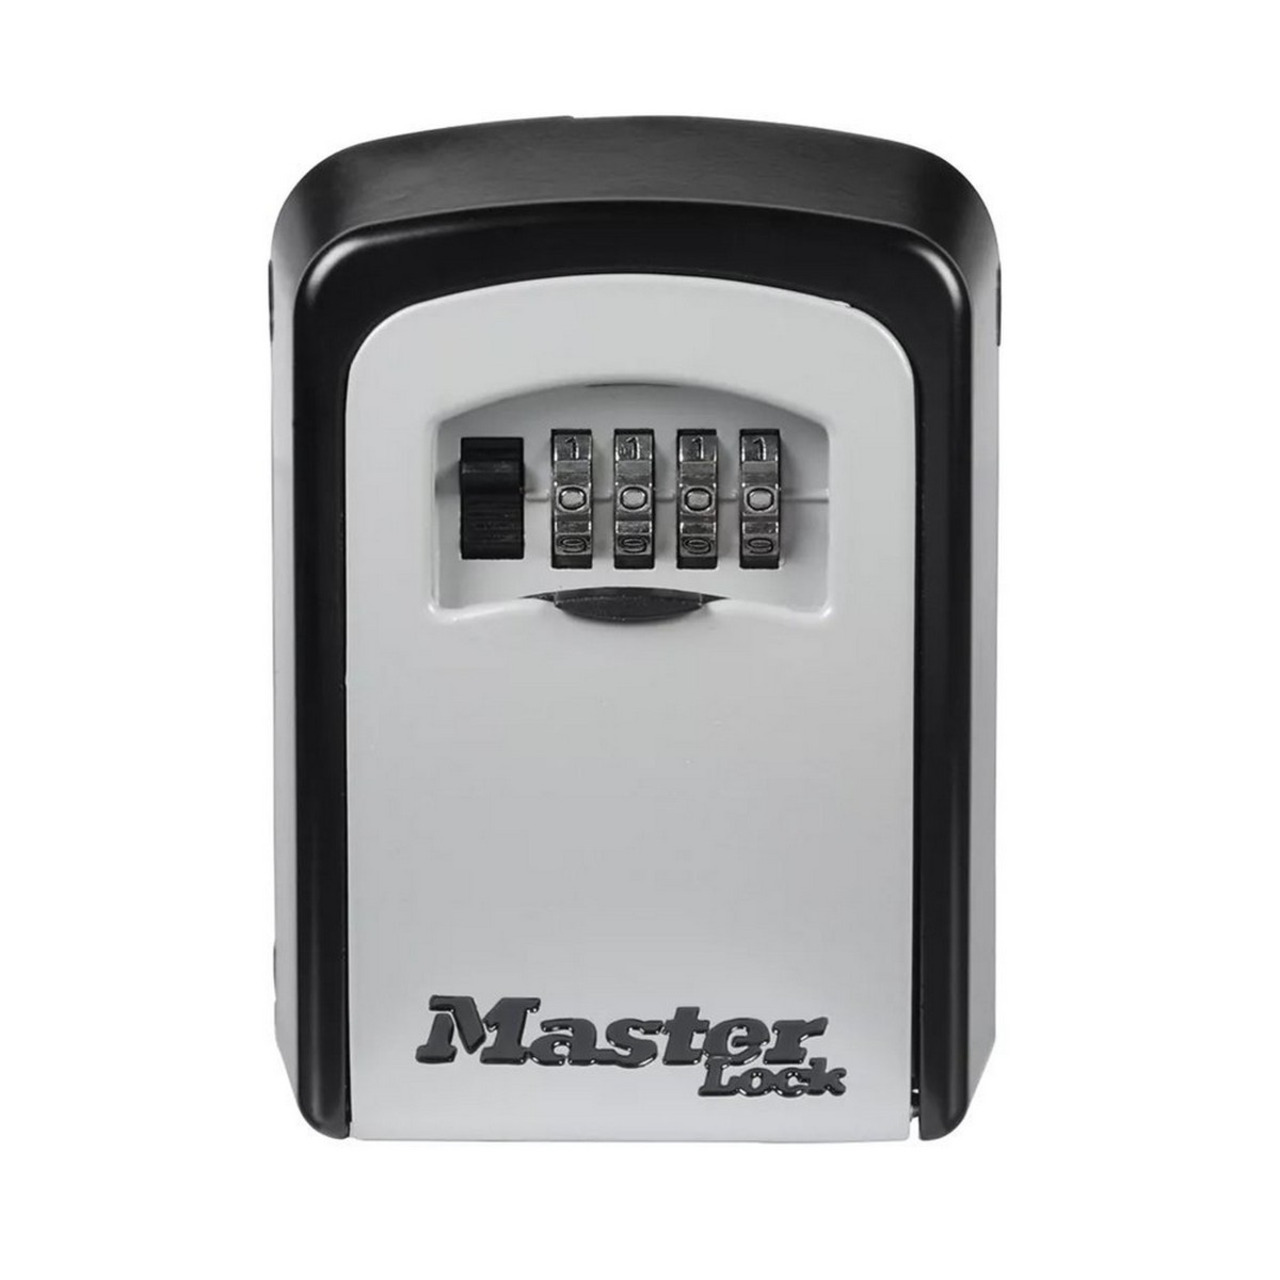 Master Lock Schlüsselsafe 5401EURD mit 4-stelligem Zahlenschloss- für bis zu 6 Schlüssel